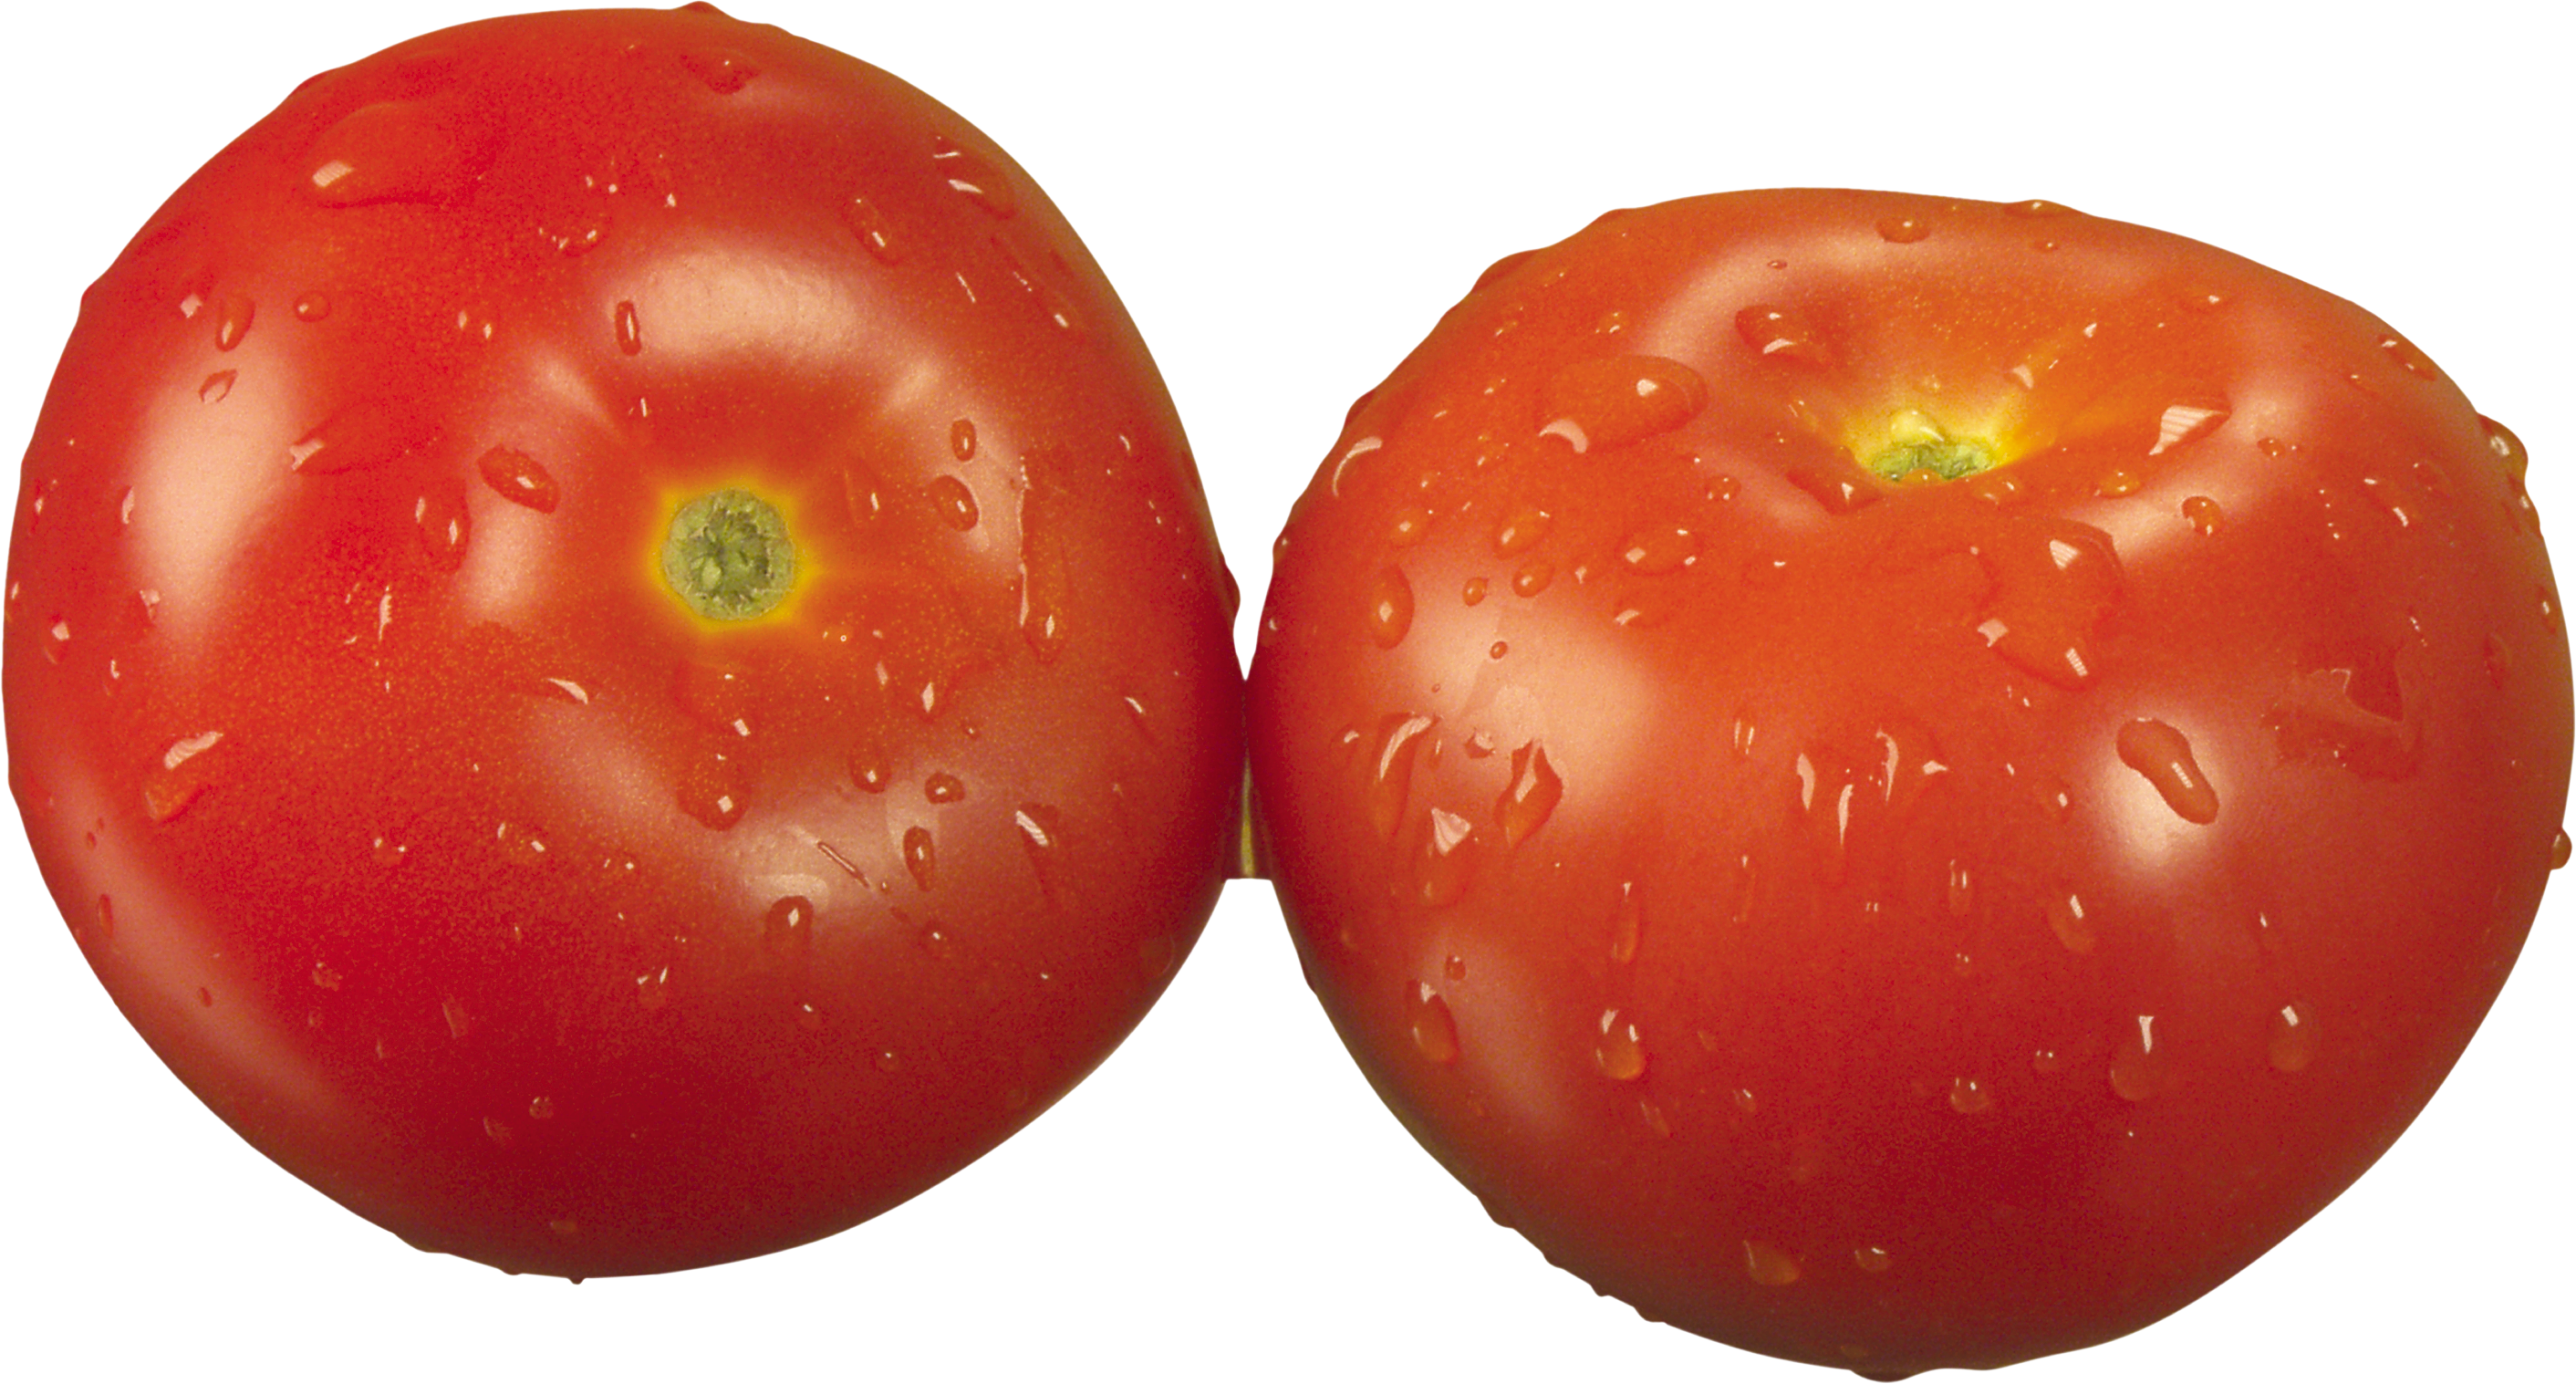 Due pomodori